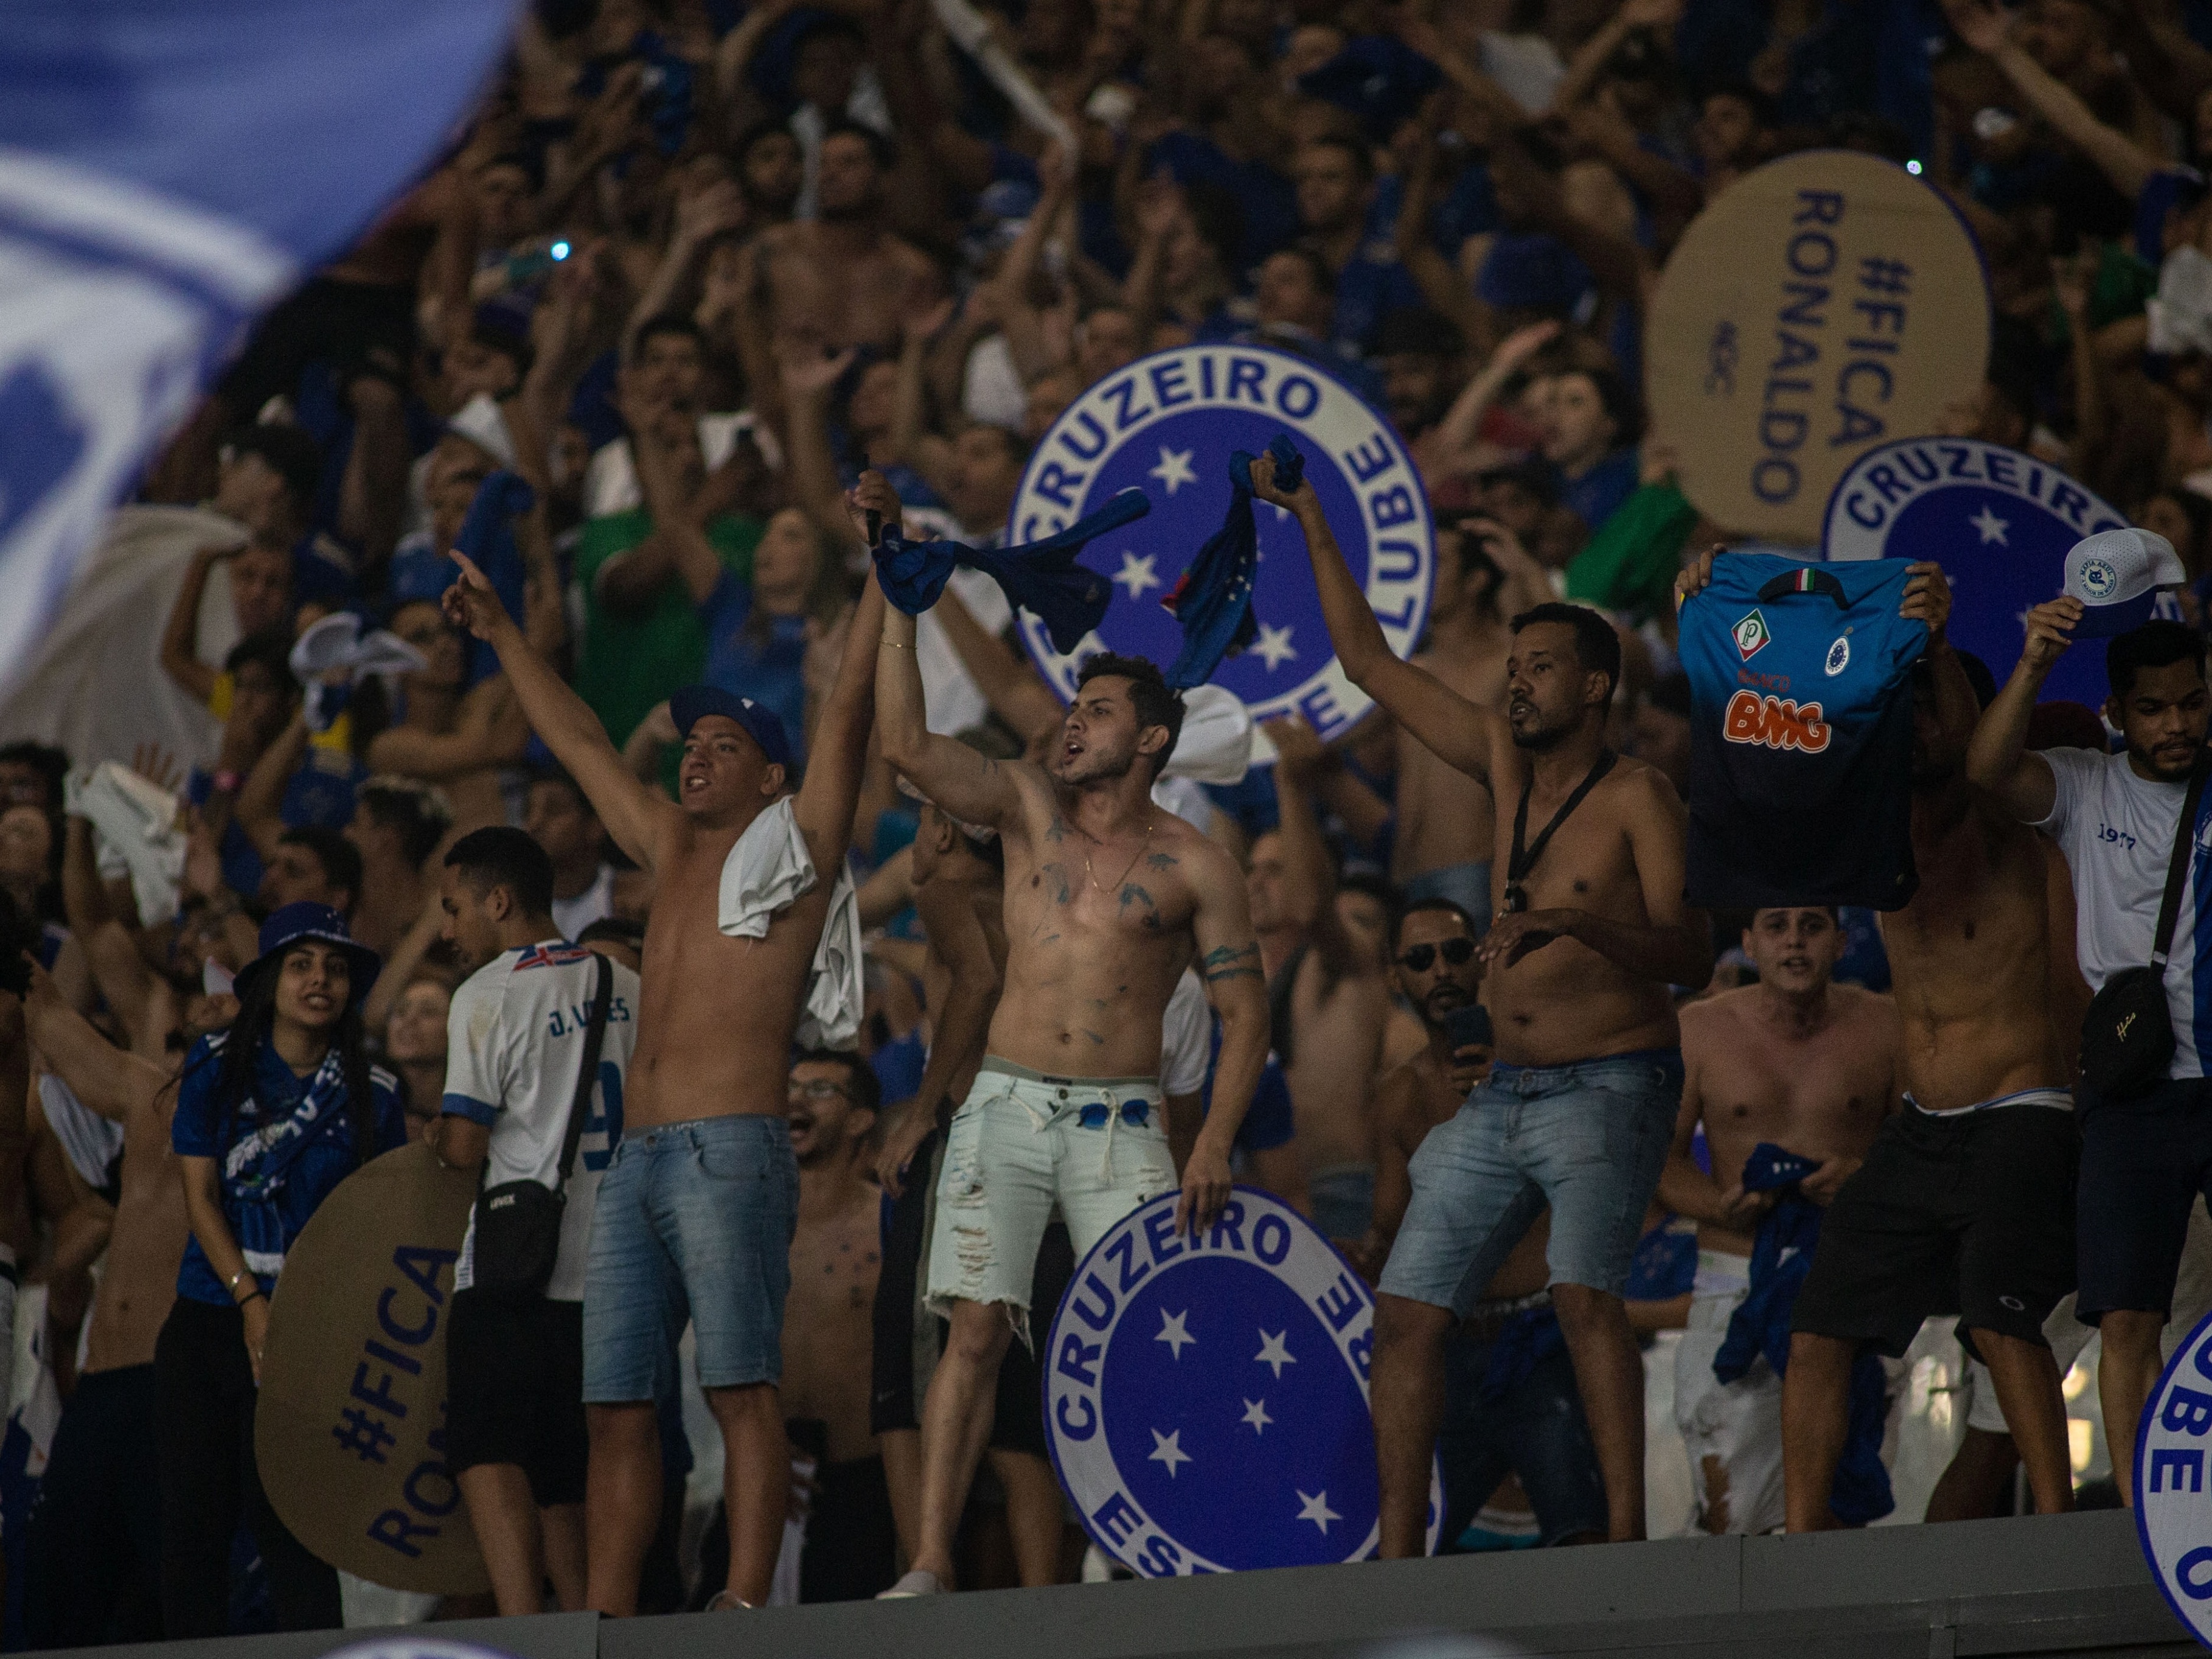 T.A.C.E.C - Torcedores Apaixonados Pelo Cruzeiro Esporte Clube